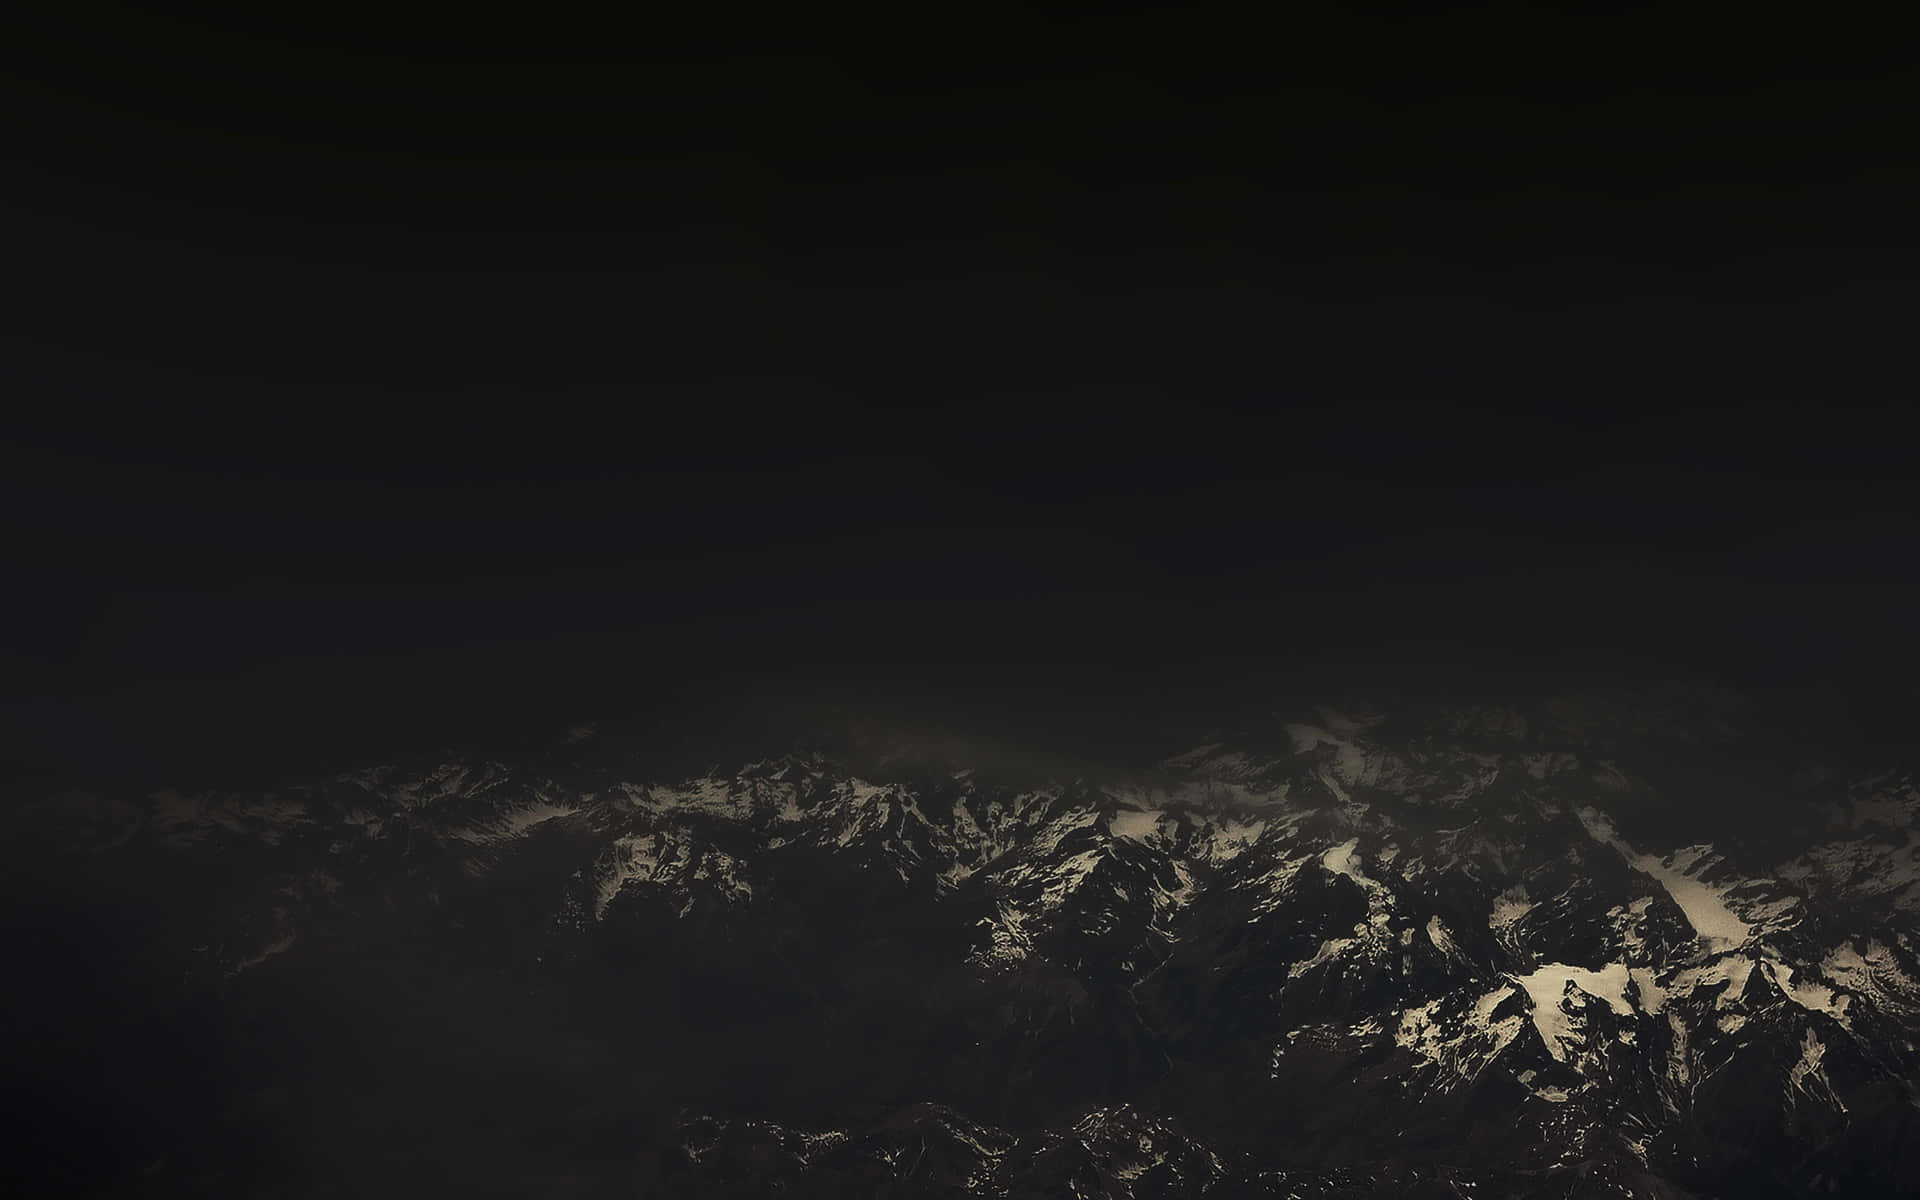 Impresionantepaisaje De Montaña Oscuro Fondo de pantalla